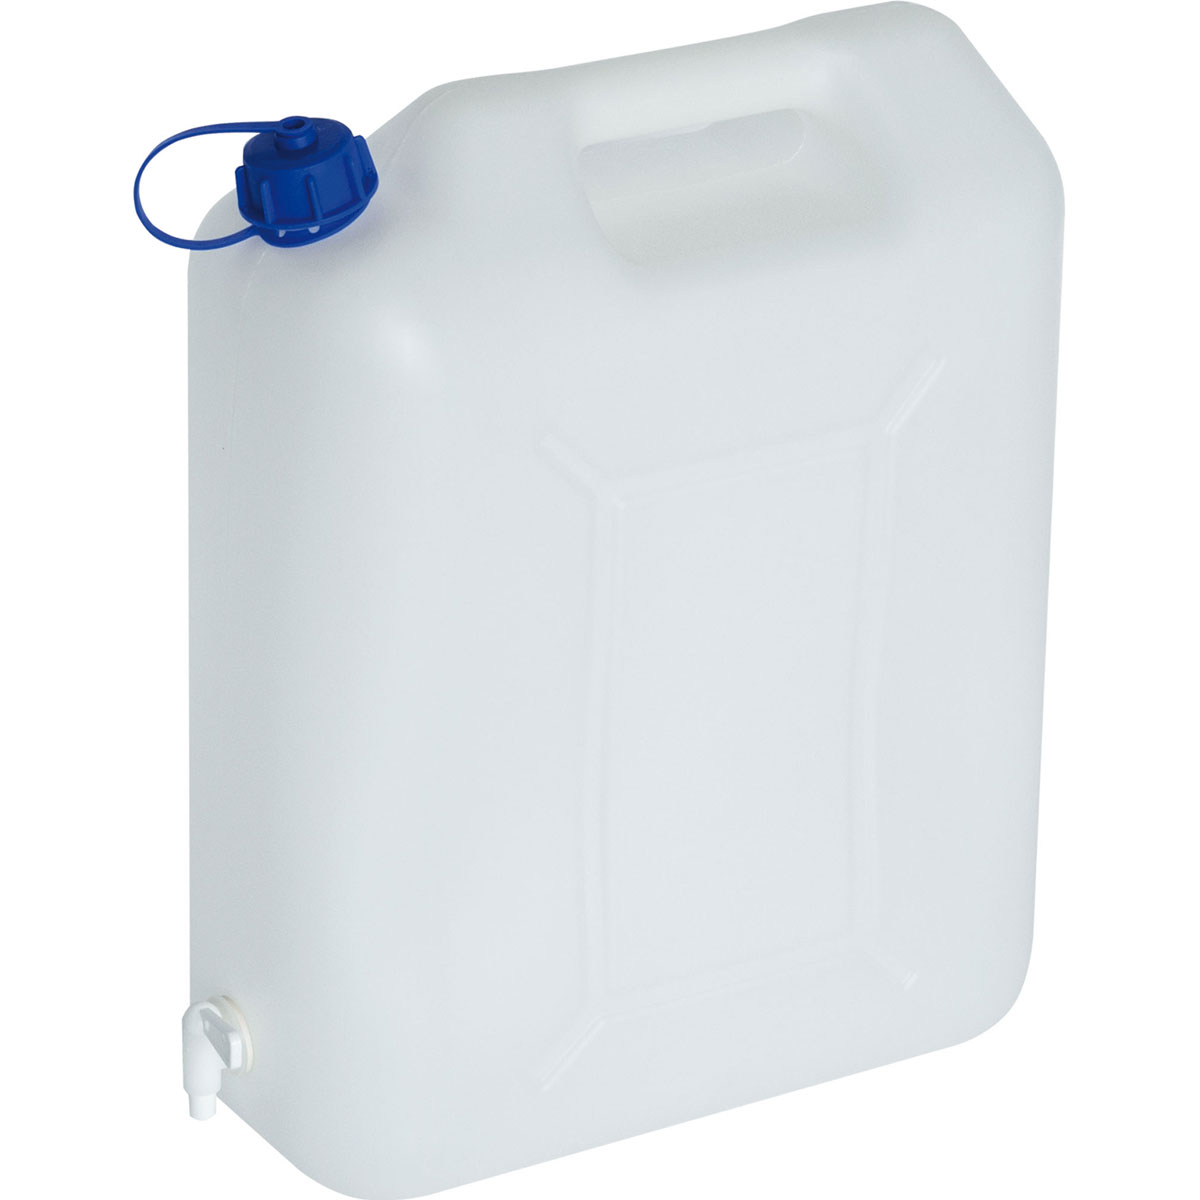 Qindoo Laborwasser Aqua Bidest 5L Kanister mit Auslaufhahn, Bidestilliert -  Aqua bidestillata – 2-Fach destilliertes Wasser (5L Kanister+Hahn) :  : Auto & Motorrad